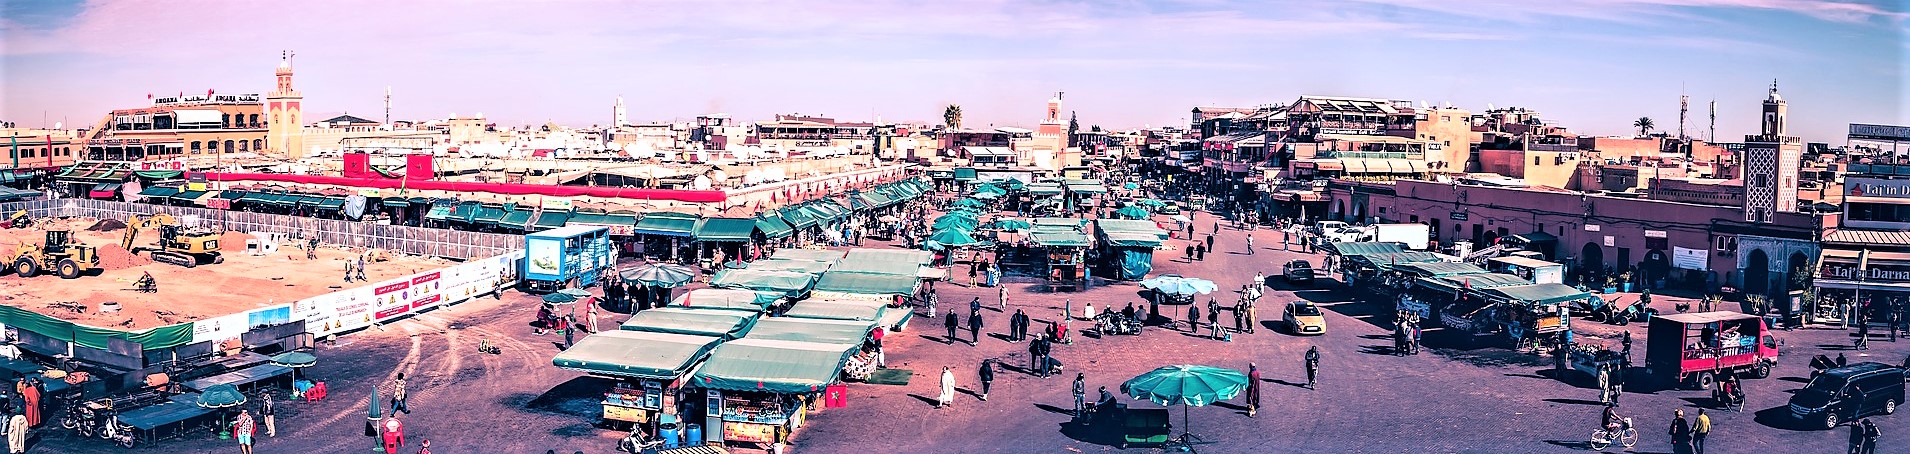 Marrakech REPORT|マラケシュ 視察ブログ